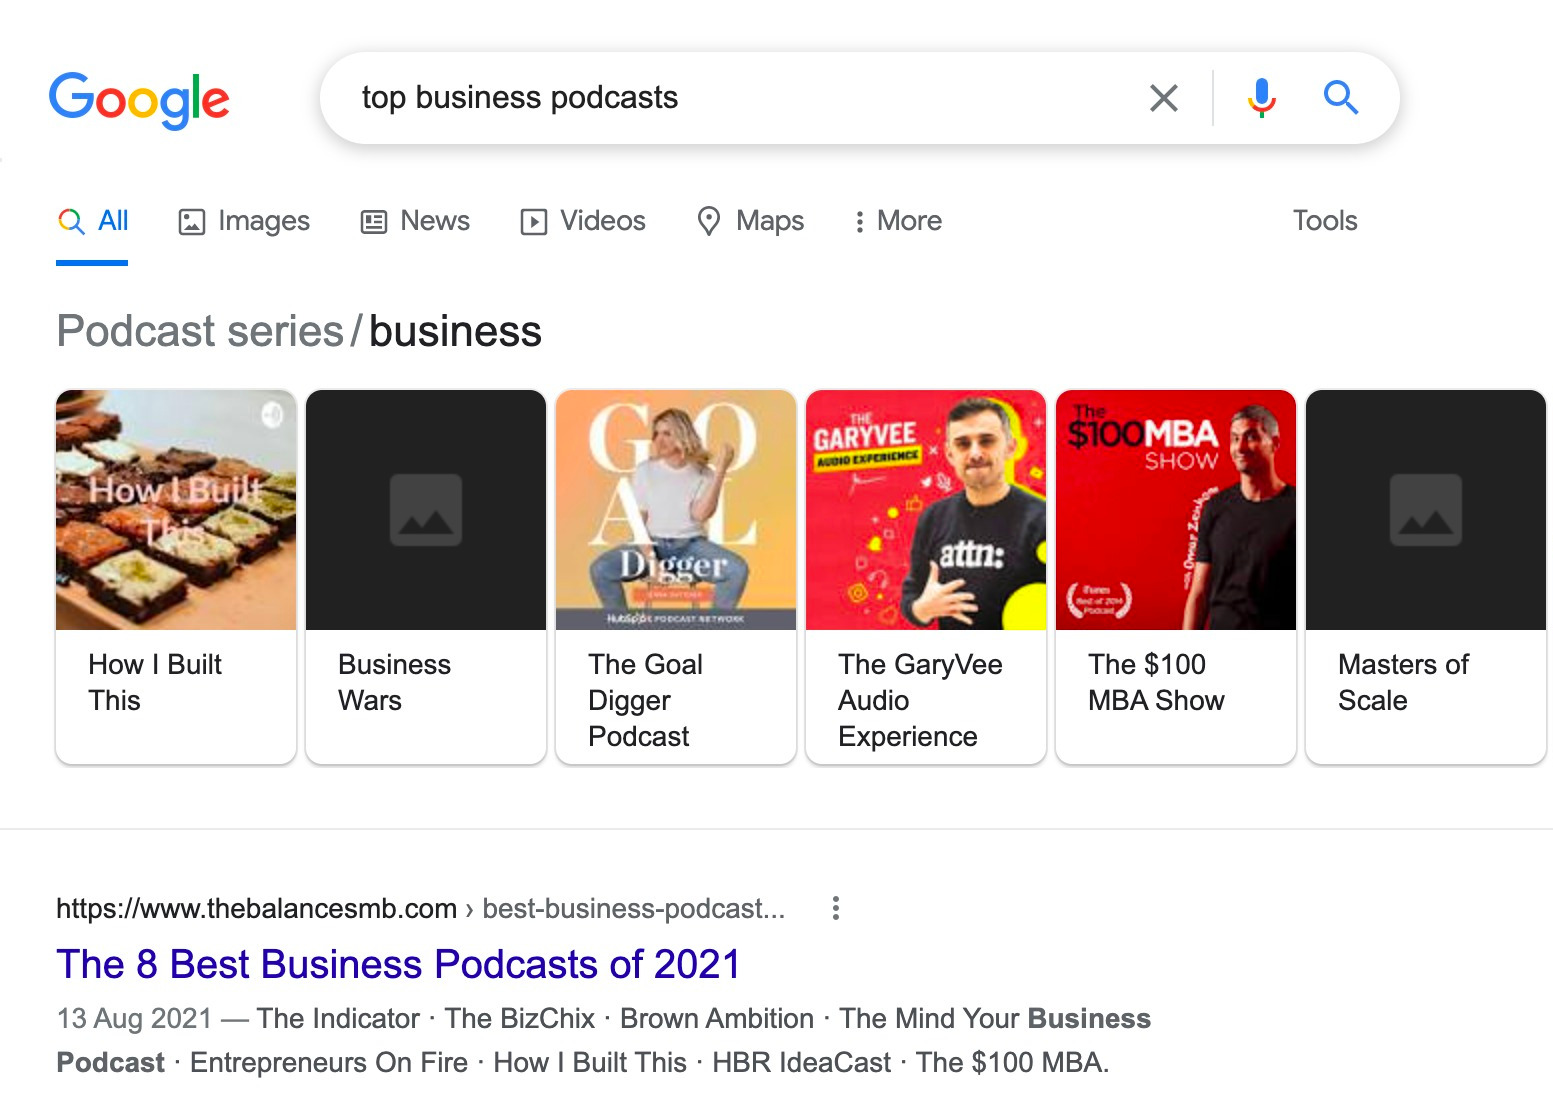 Resultados de Google que muestran los mejores podcasts de negocios